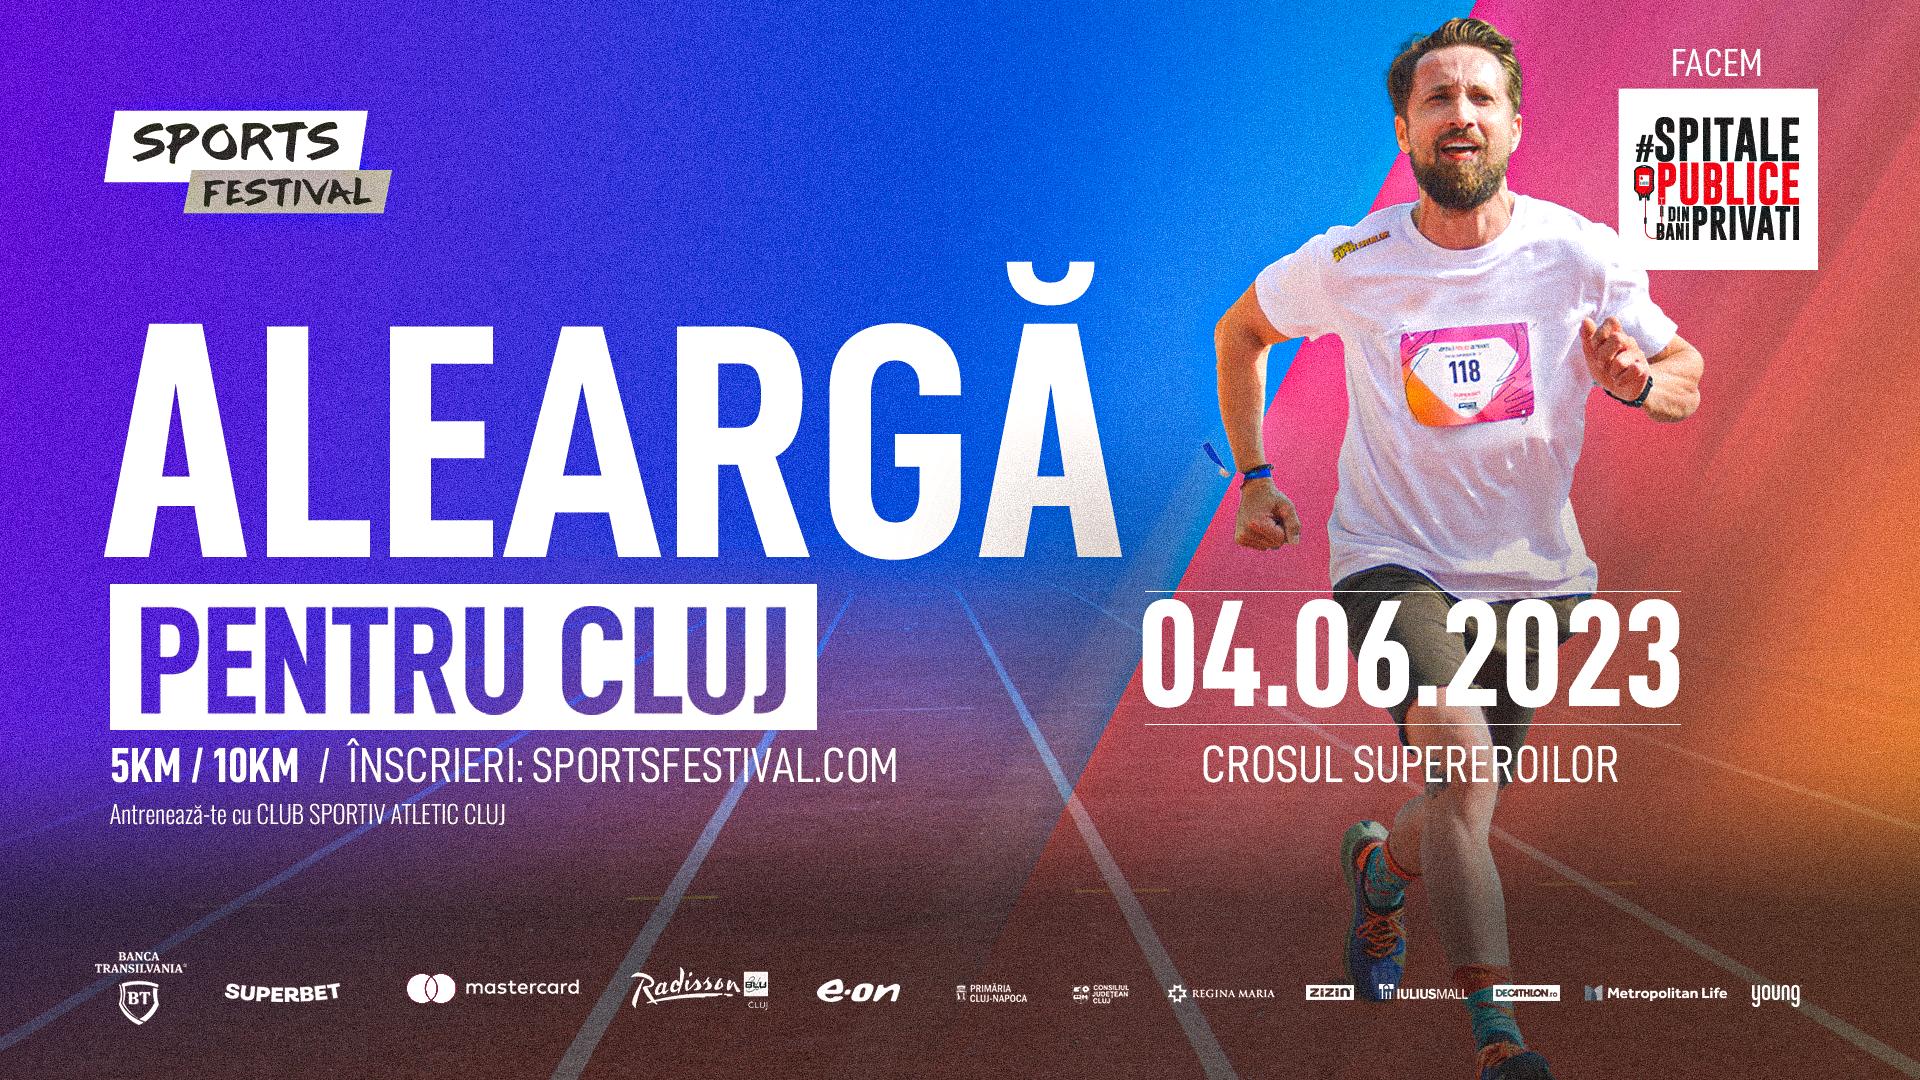 Sports Festival 2023: cel mai mare eveniment dedicat sportului la Cluj. Concerte, parade și întâlniri cu celebrități din România